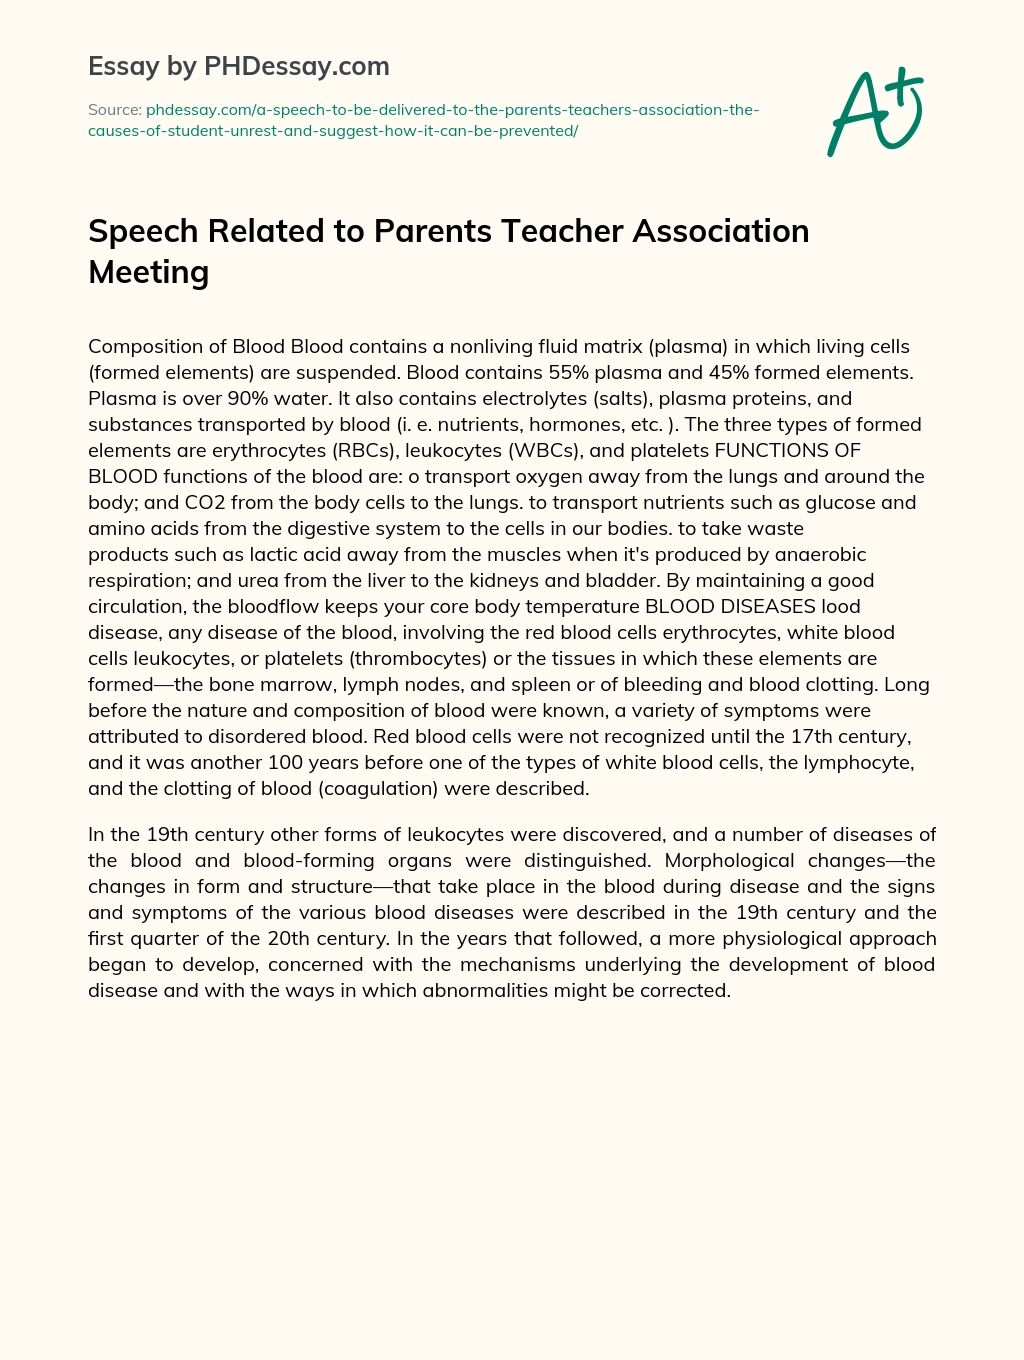 Speech Related to Parents Teacher Association Meeting essay